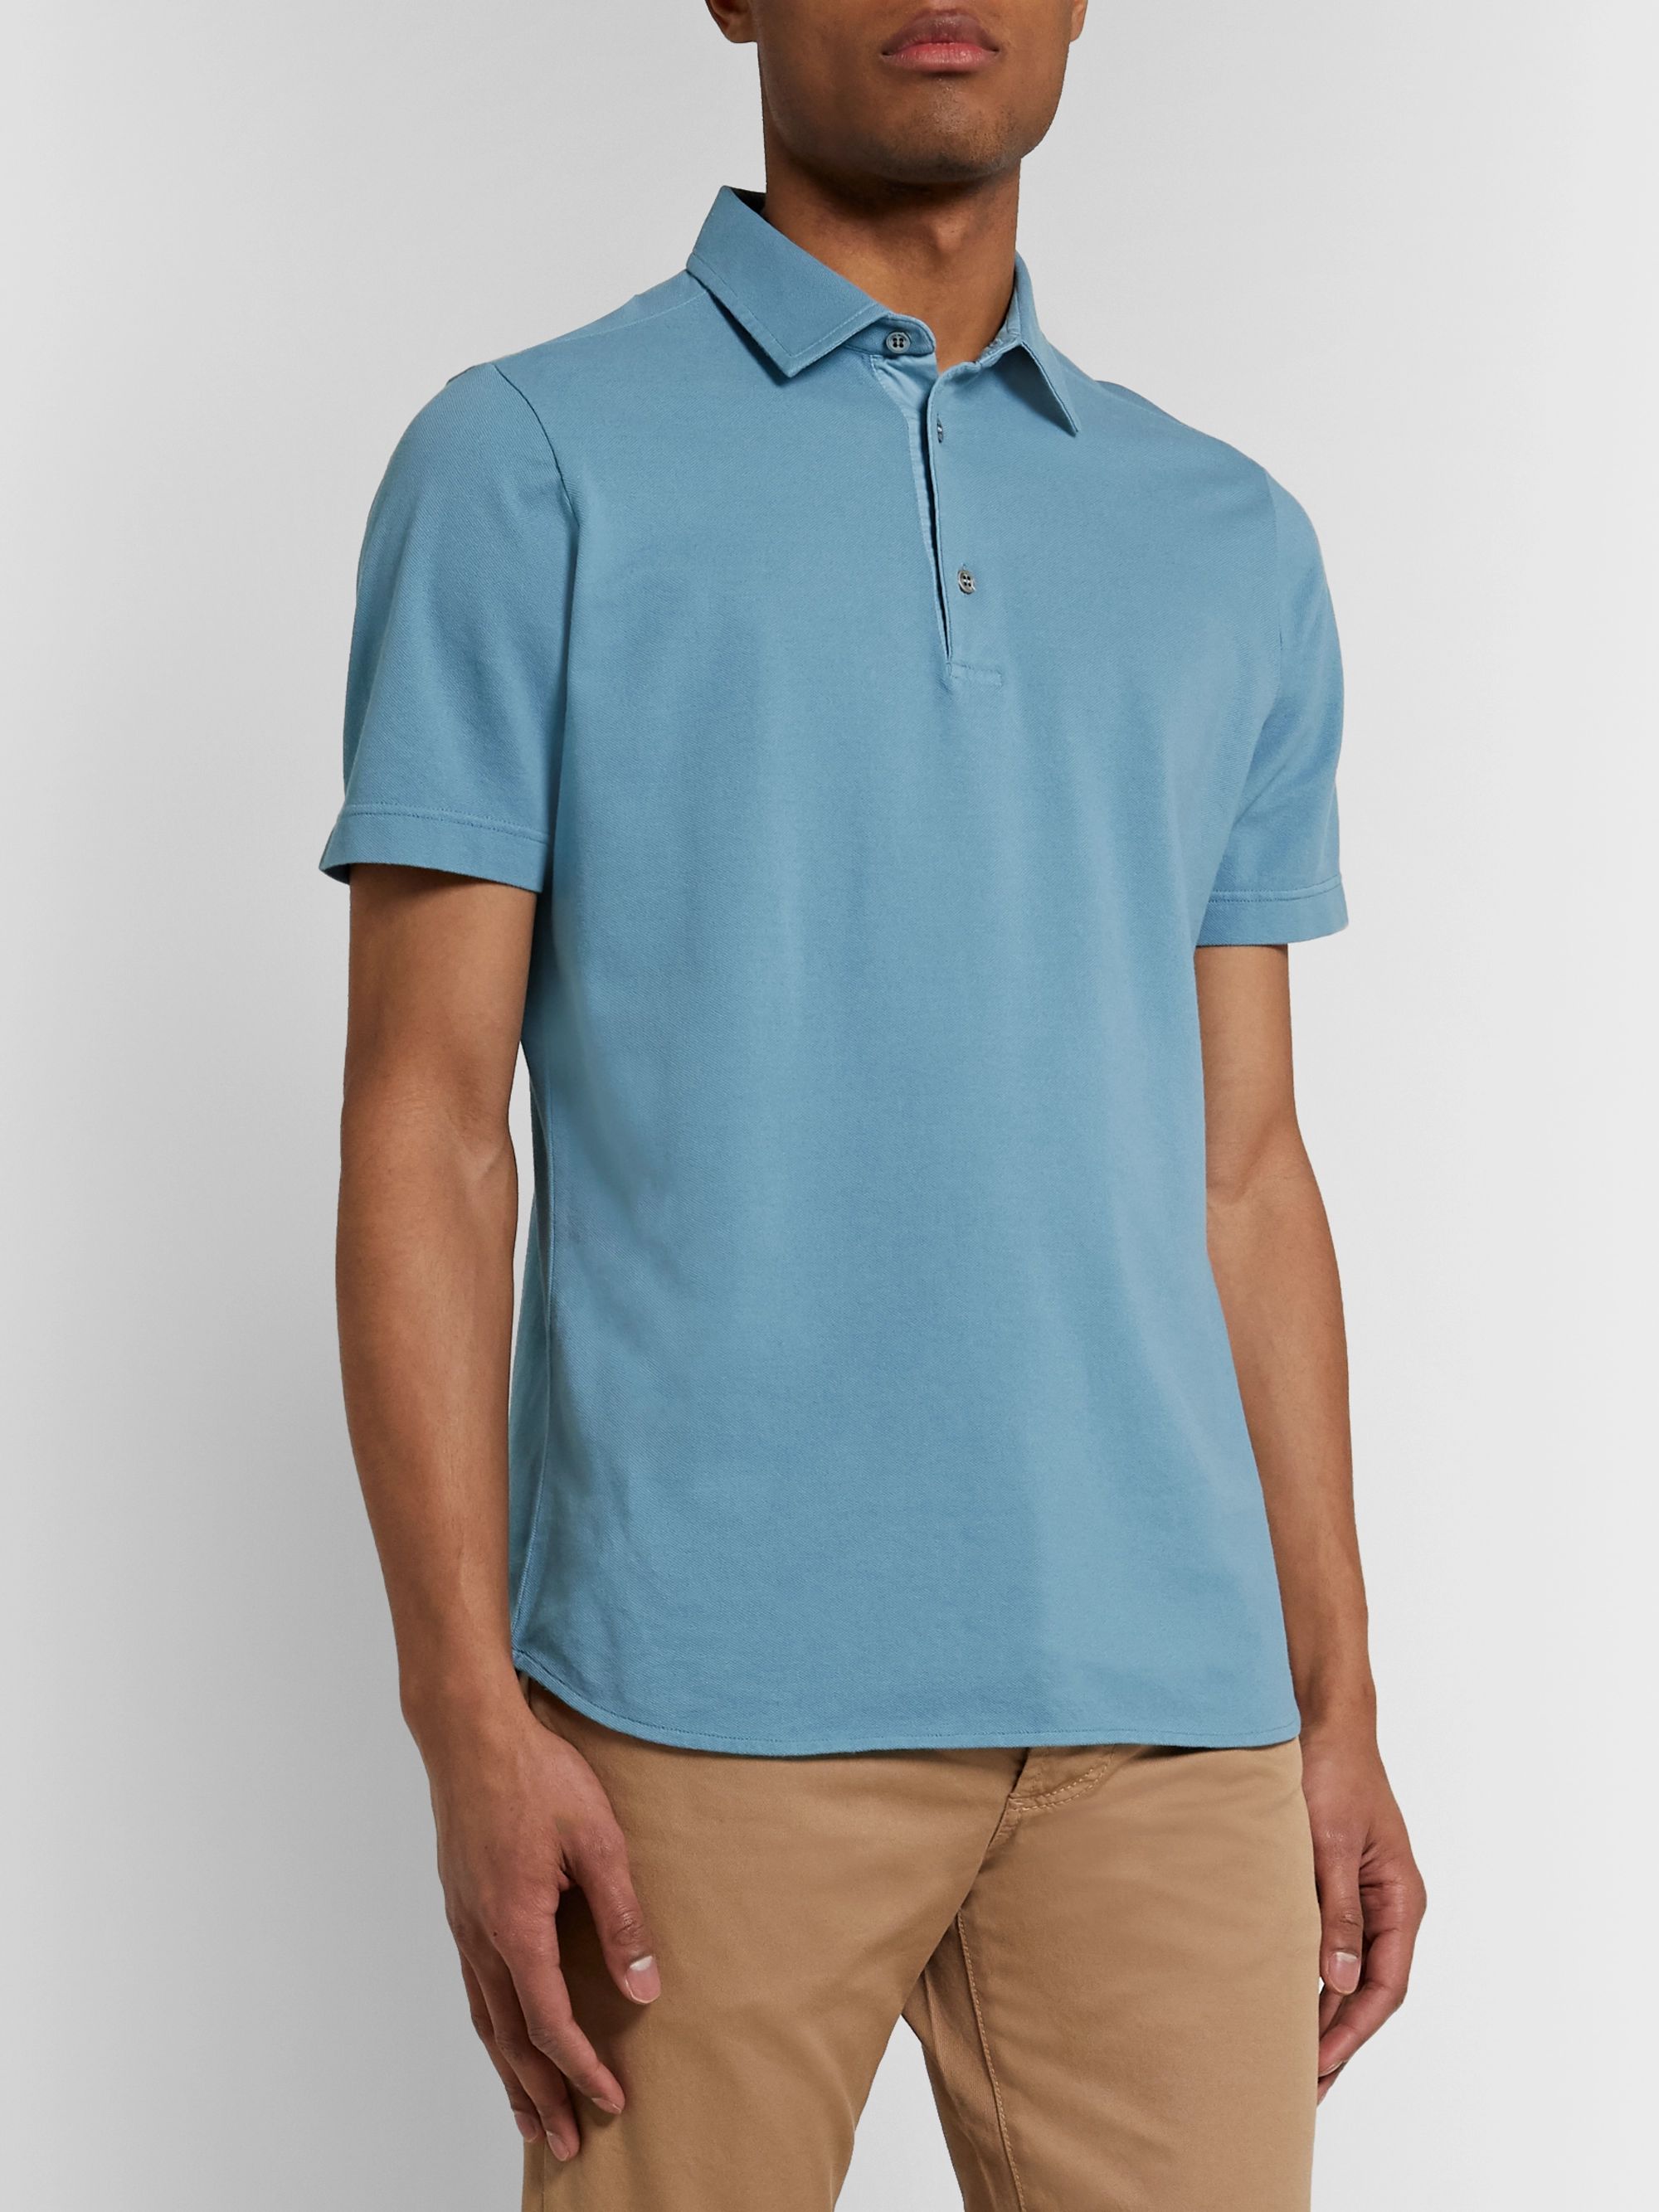 Light blue Cotton-Piqué Polo Shirt | LORO PIANA | MR PORTER